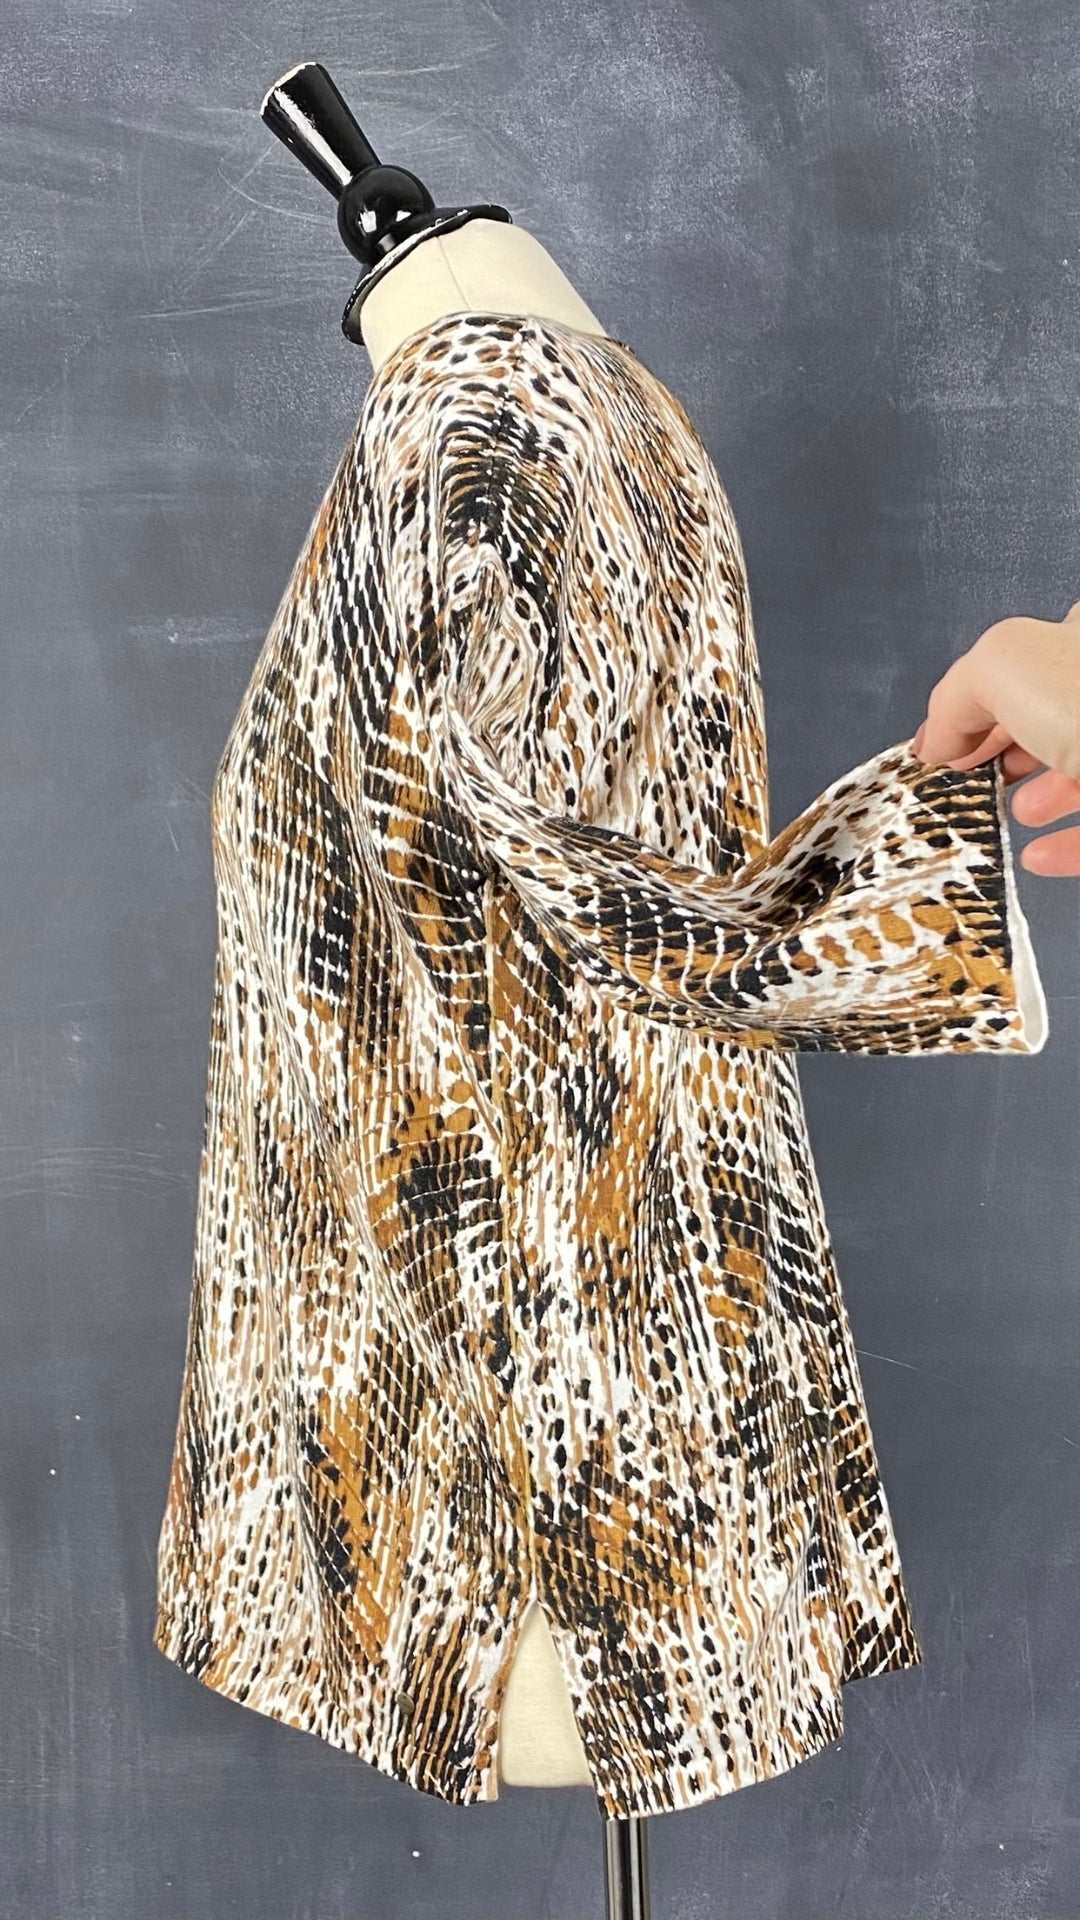 Chandail tricot col v motif style léopard Olsen, taille s/m. Vue de côté.